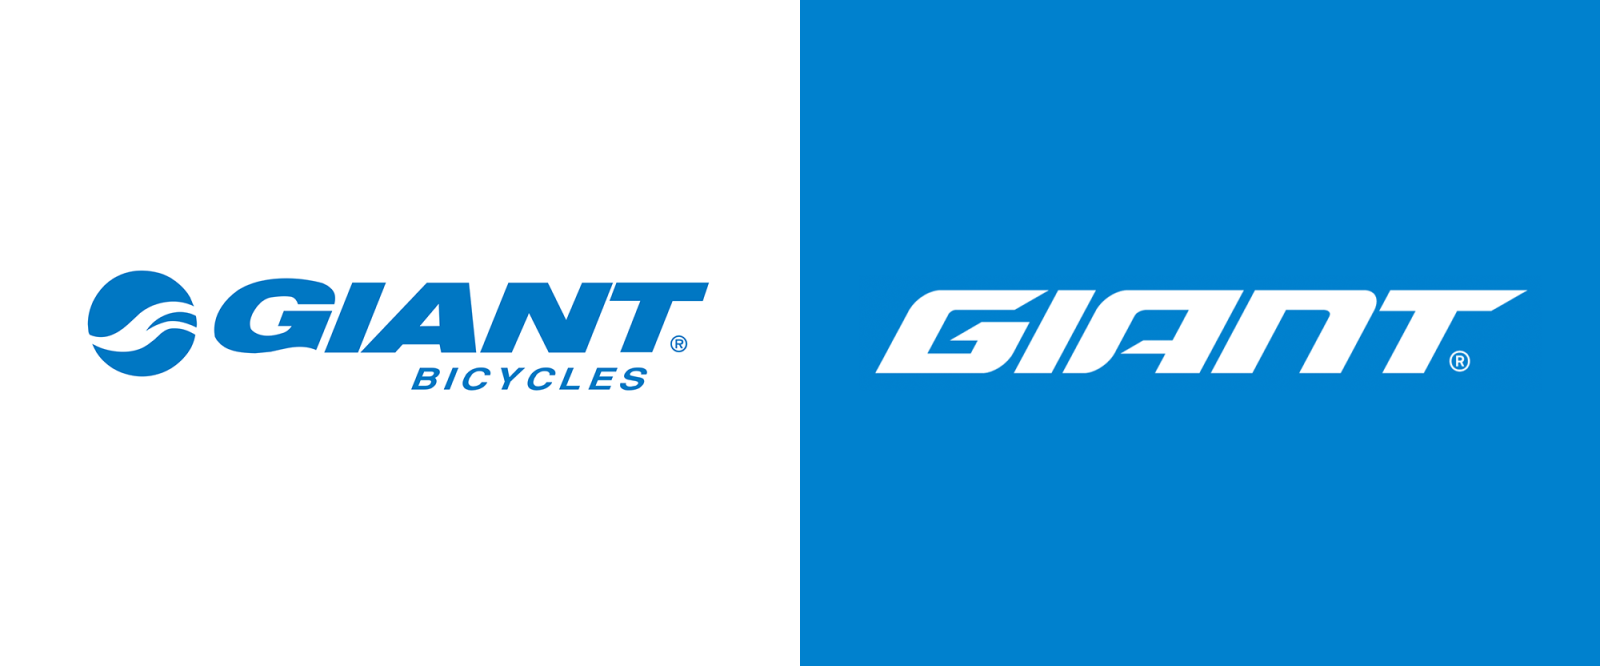 Xe đạp Giant là thương hiệu xe đạp nổi tiếng của Đài Loan